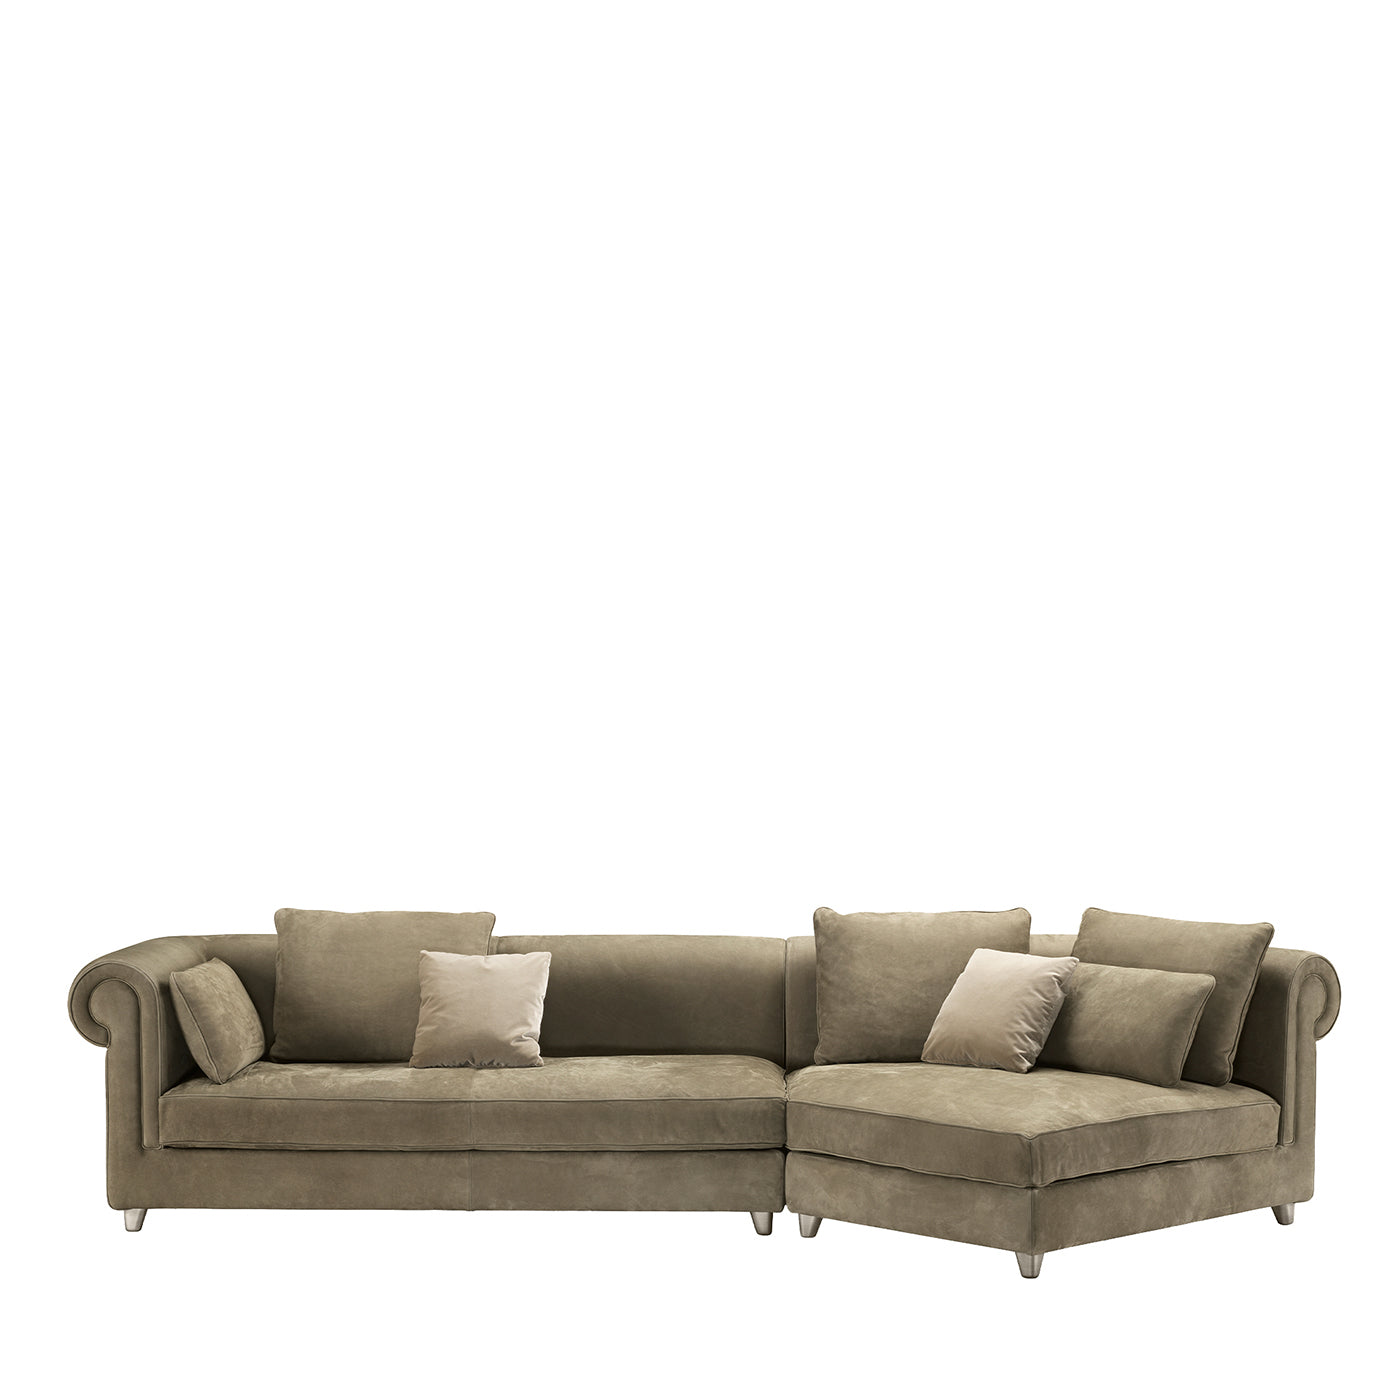 Portofino graues sofa by Stefano Giovannoni #2 - Hauptansicht